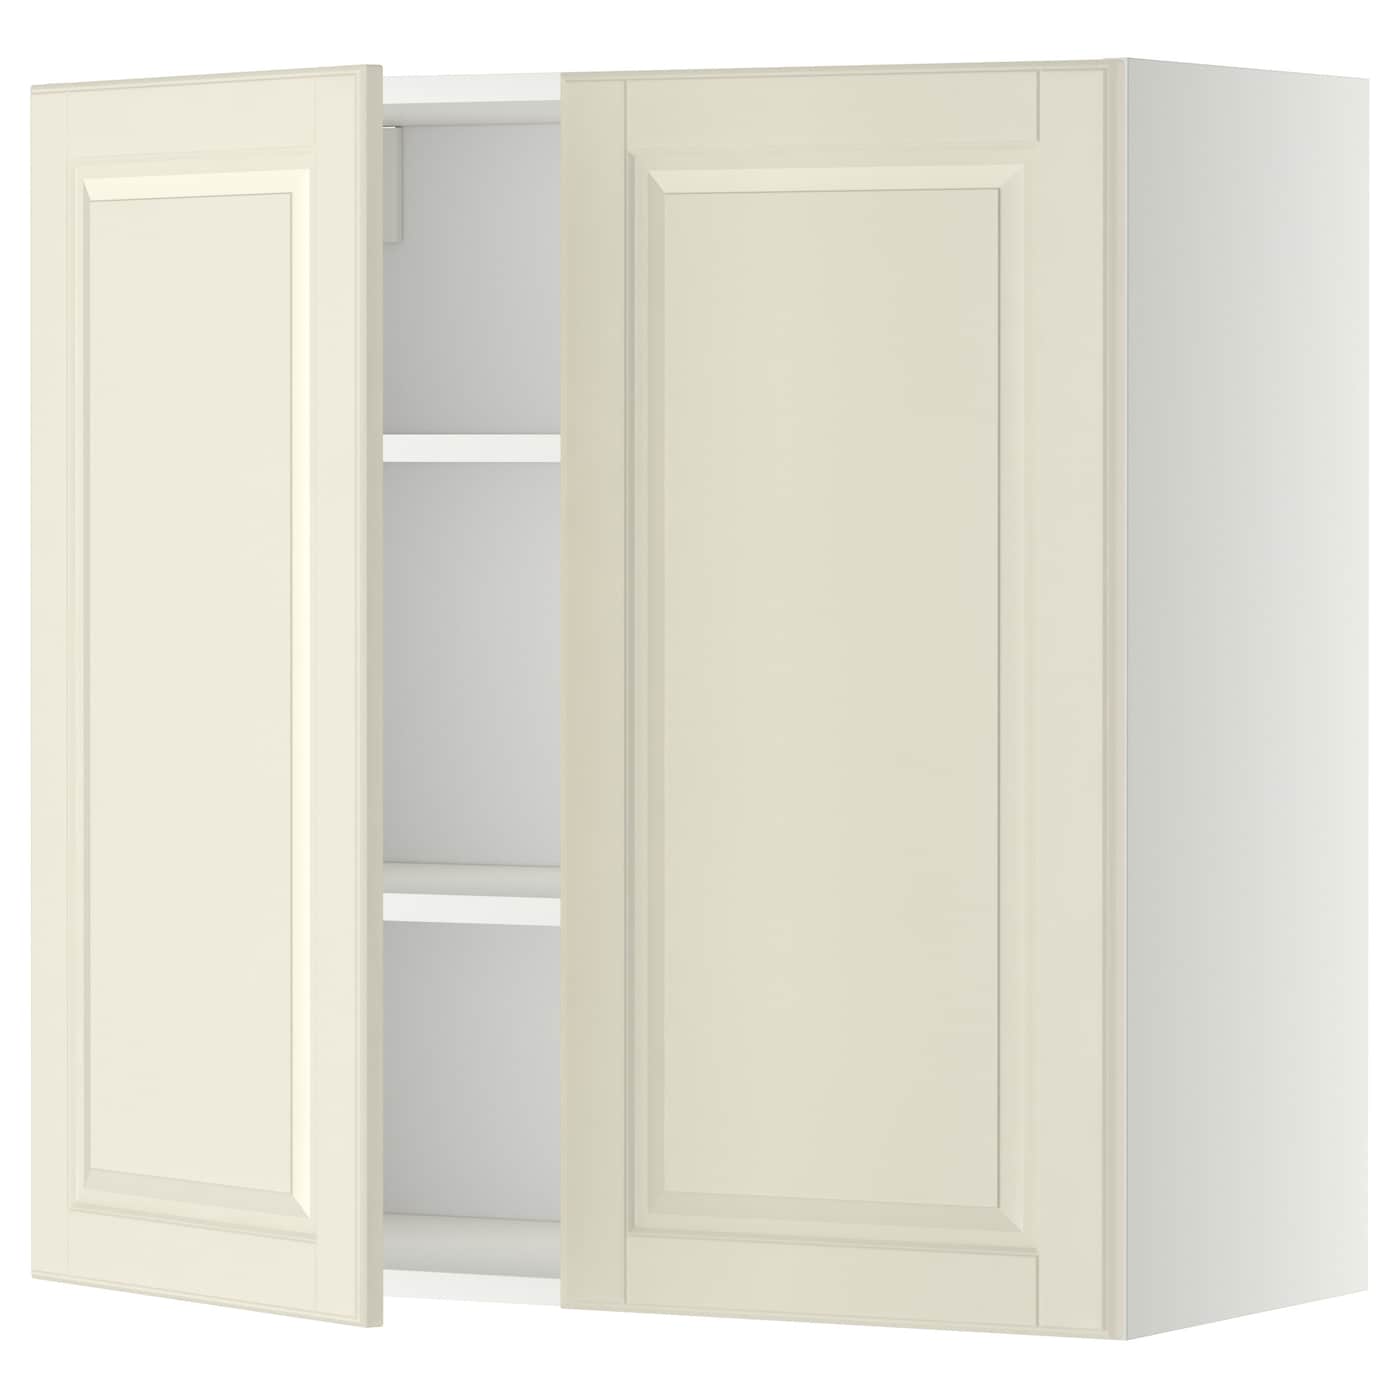 Навесной шкаф с полкой - METOD IKEA/ МЕТОД ИКЕА, 80х80 см, белый/кремовый